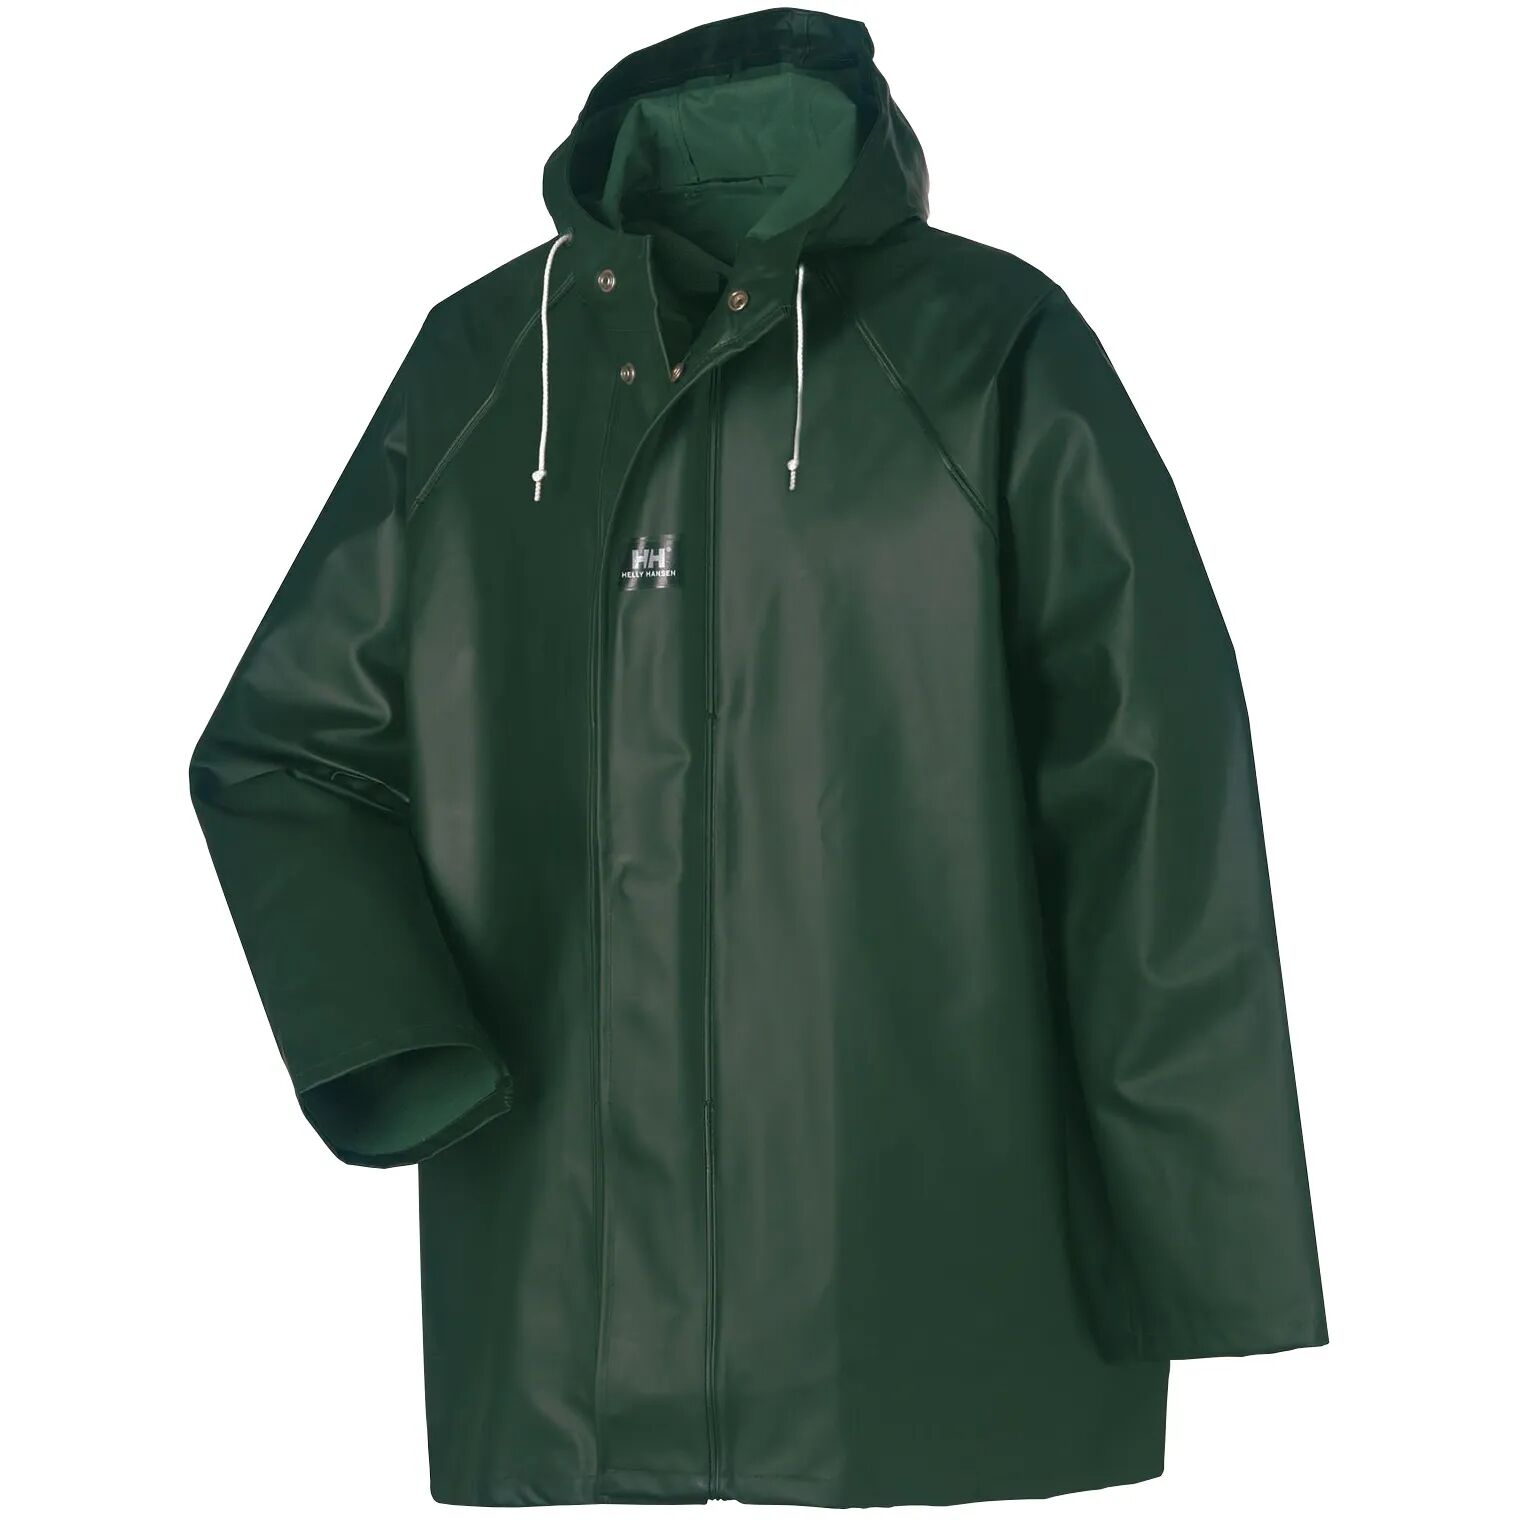 HH Workwear Helly Hansen WorkwearHighliner 100% Cotton Waterproof Jacket Green XS